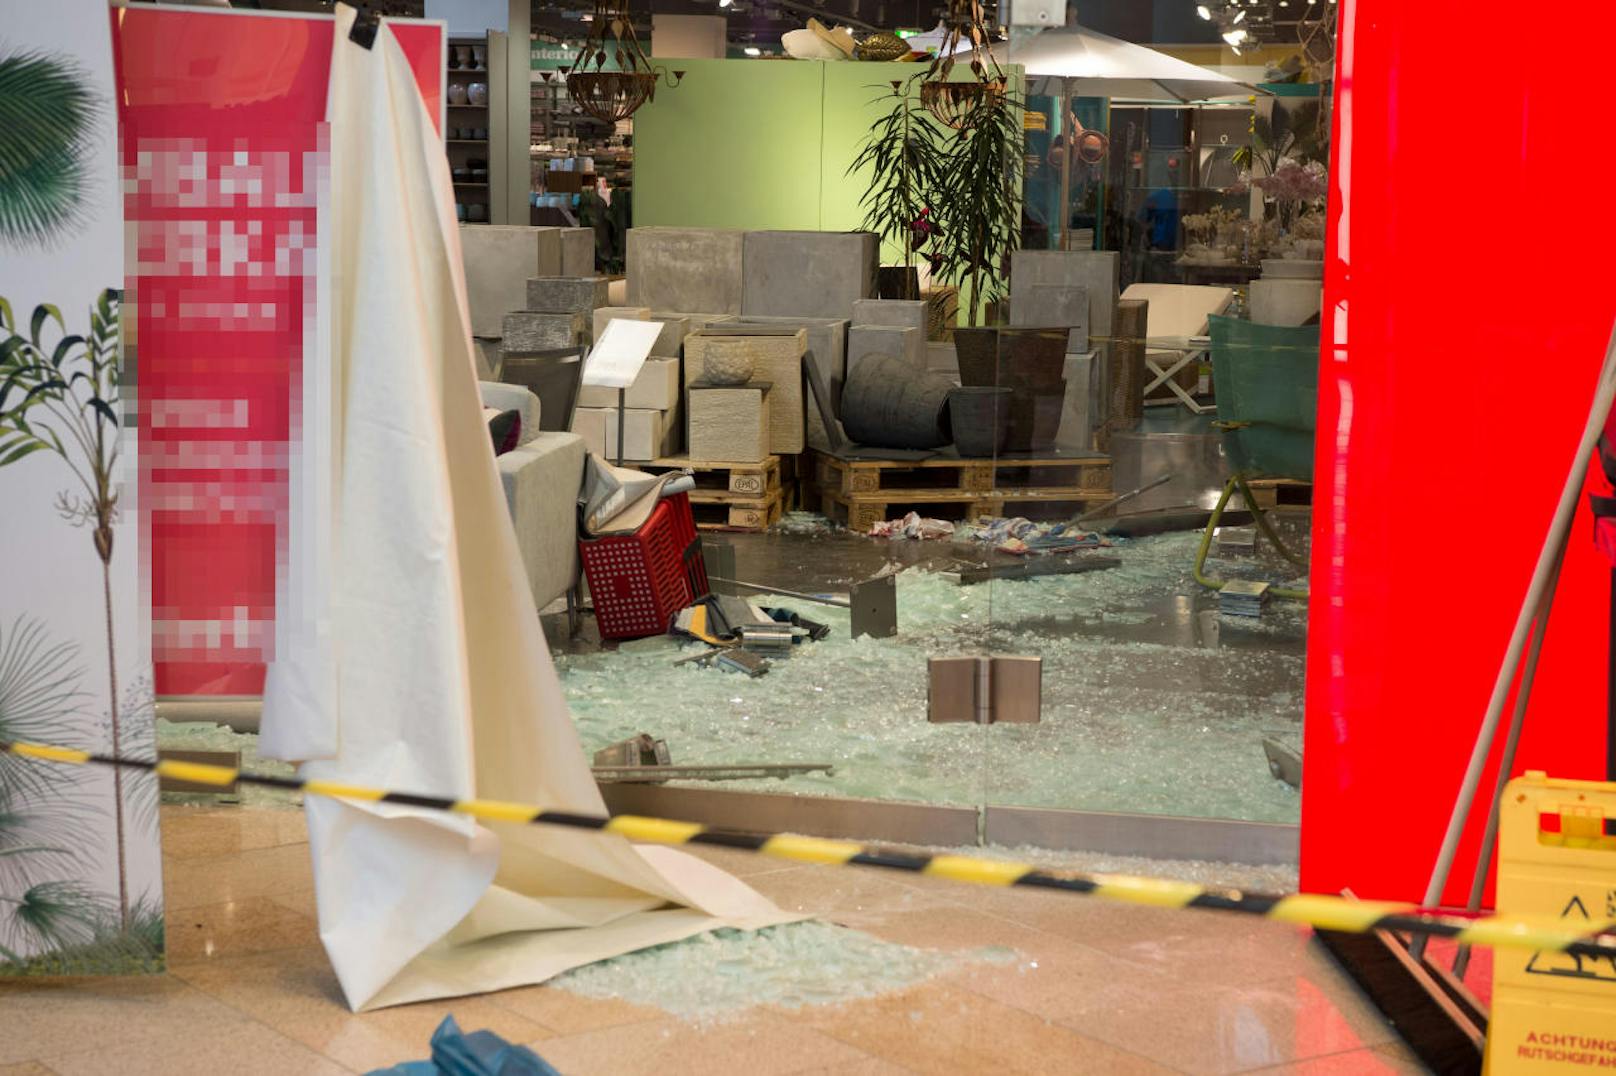 In der Plus City stürzten drei rund 500 Kilogramm schwere Glaselemente auf die Verkäuferin.